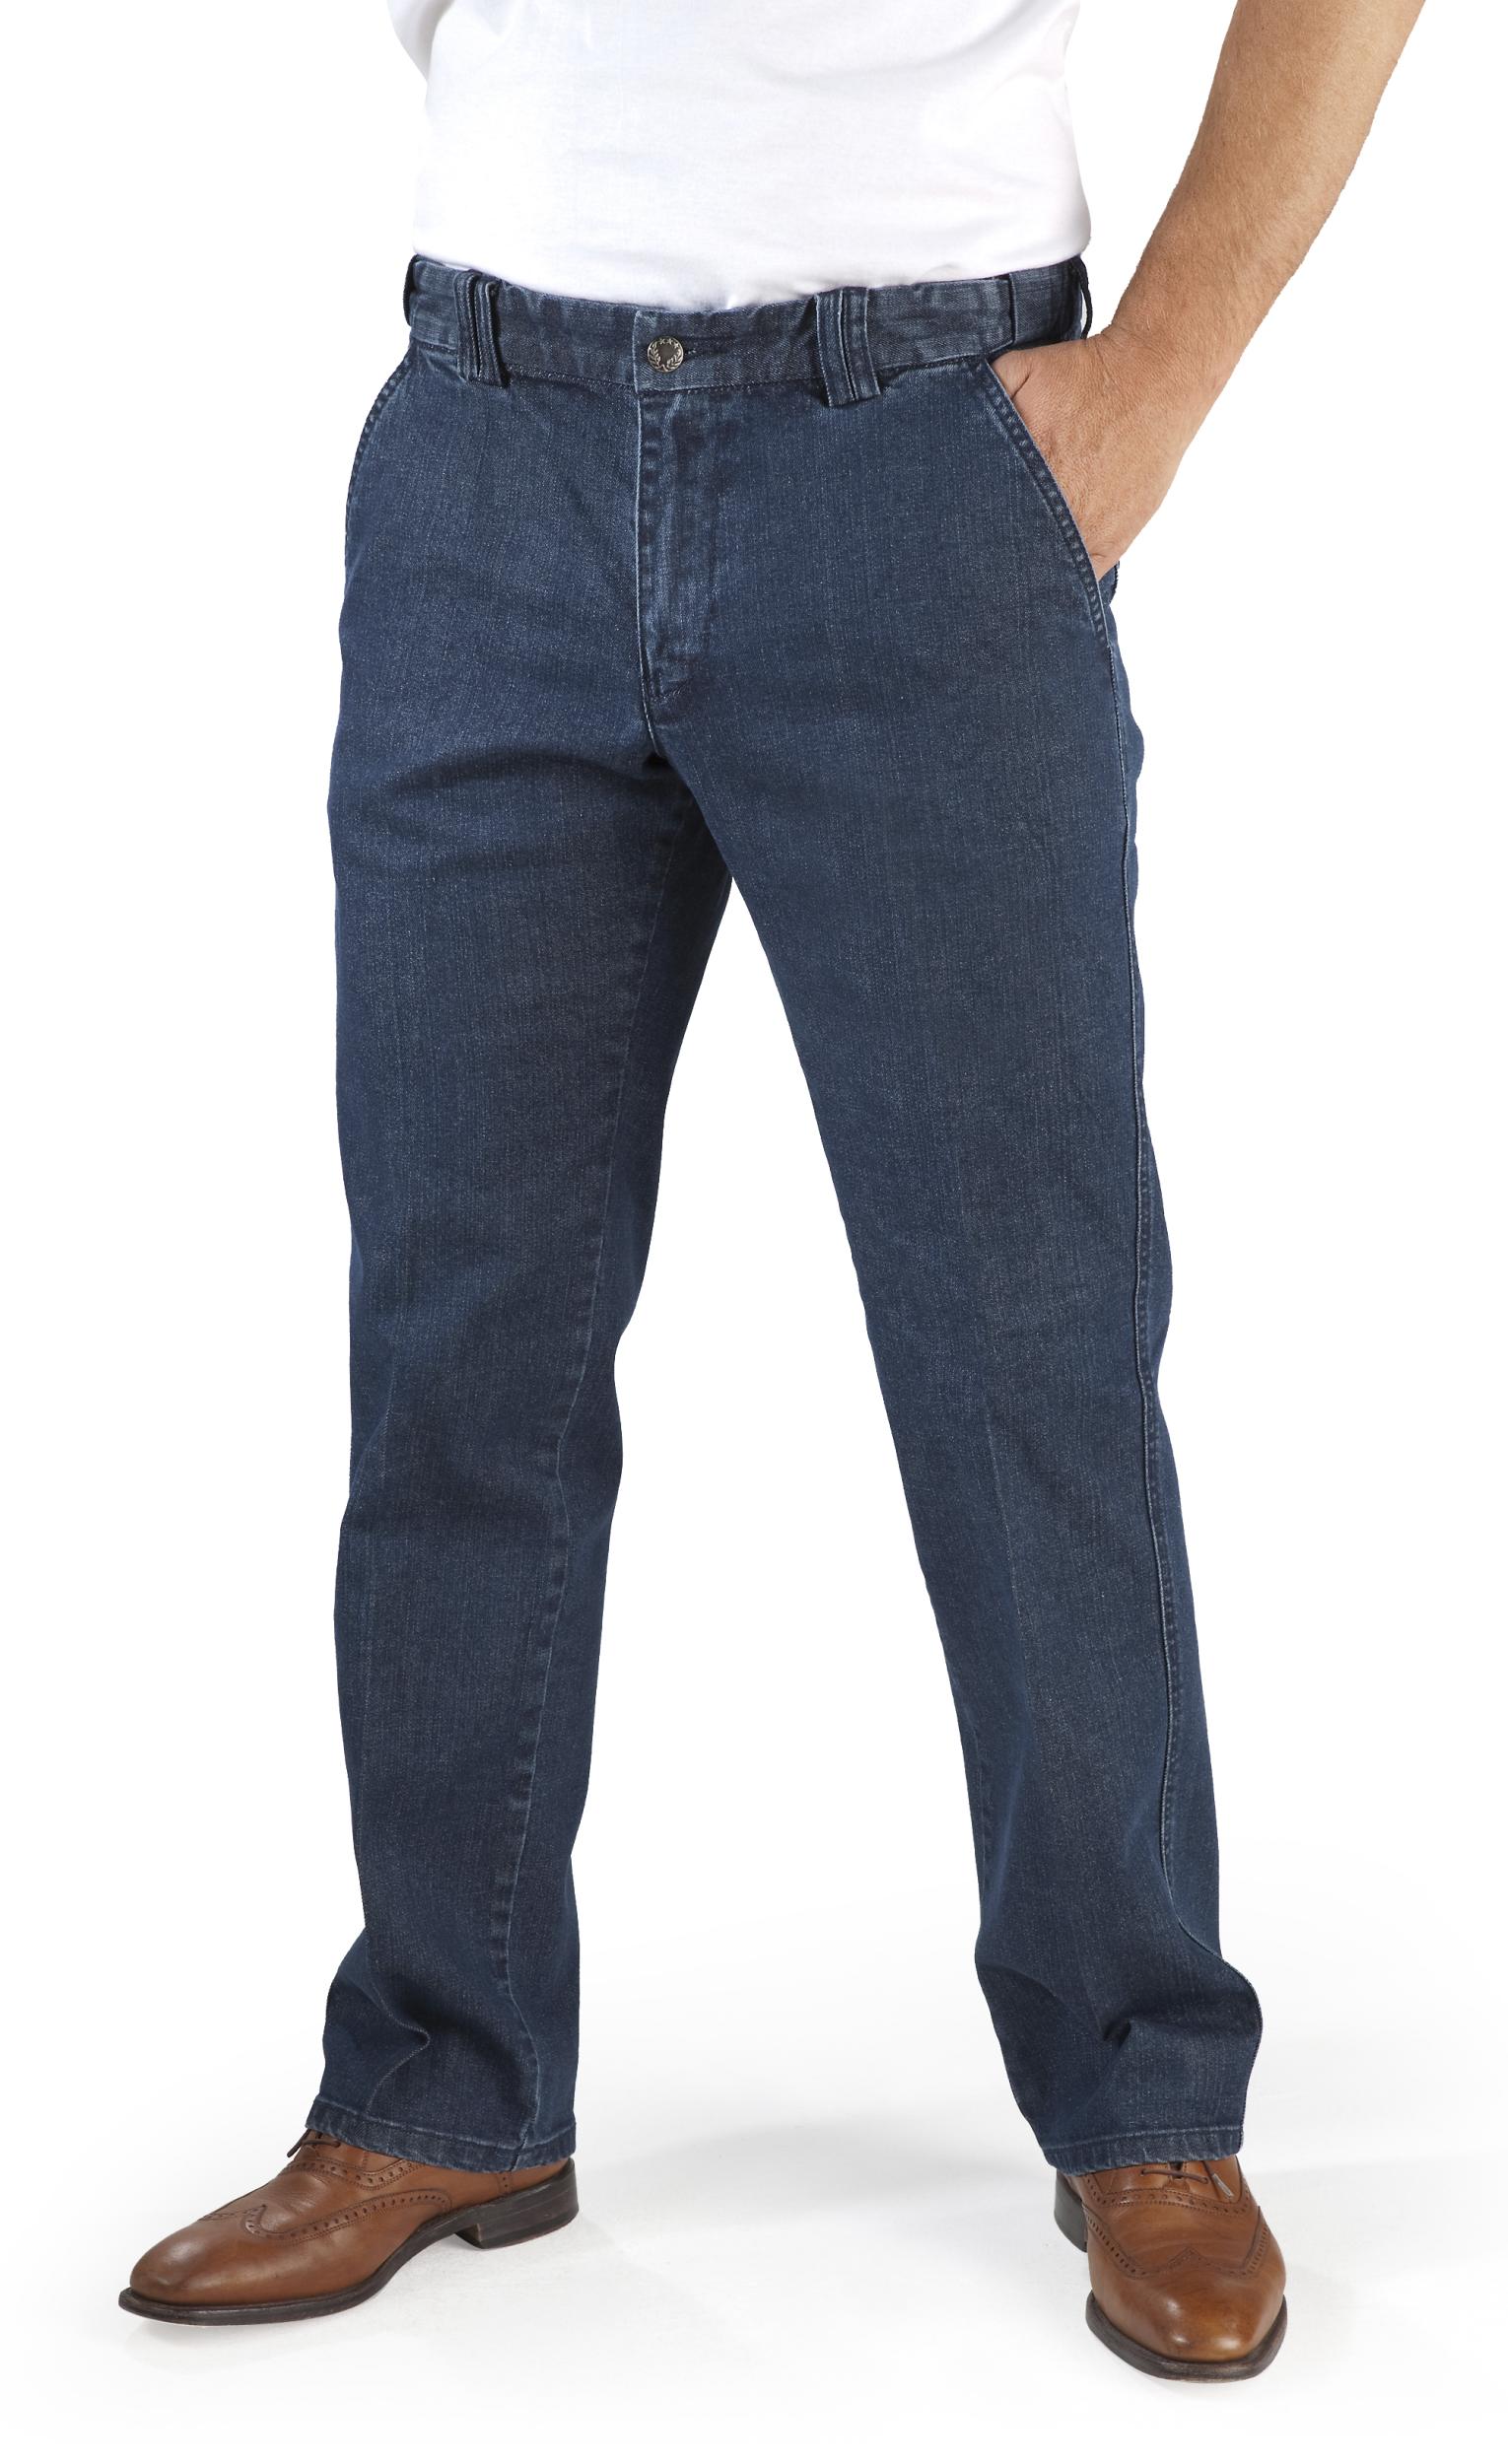 Wisent Jeans mit verstecktem Komfortbund, Farbe bluestone